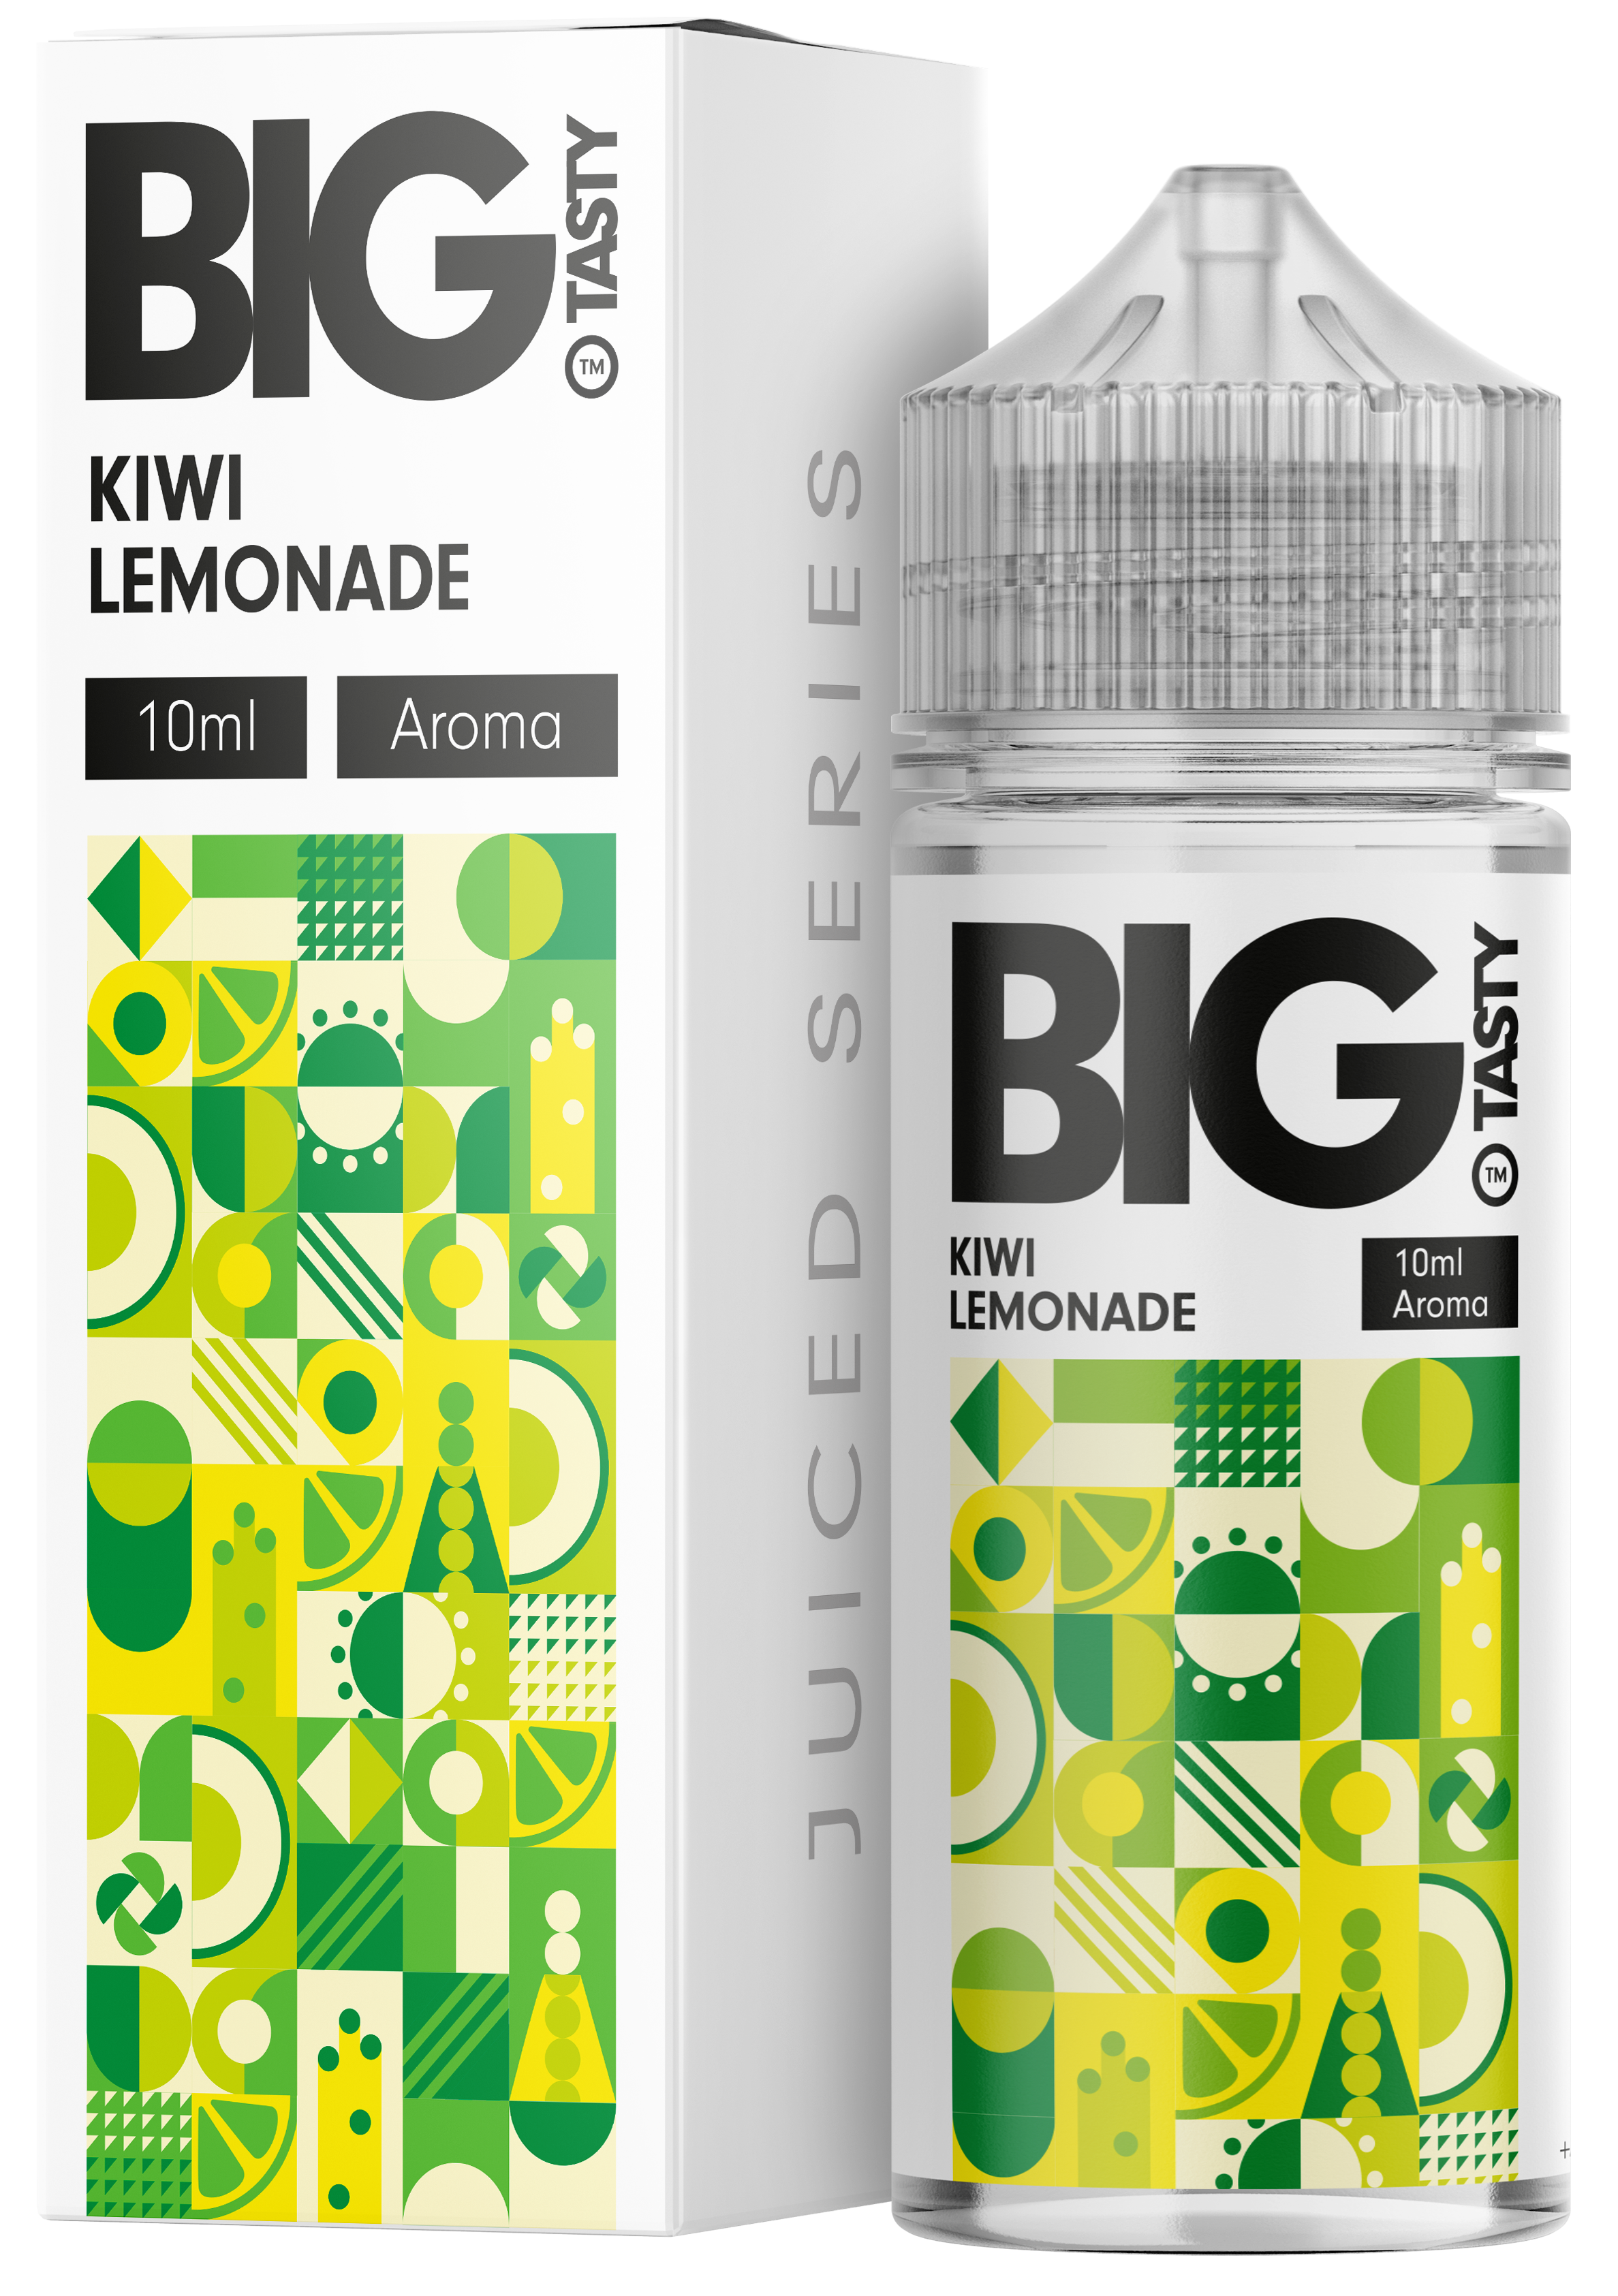 Big Tasty - Kiwi Lemonade Aroma 10ml